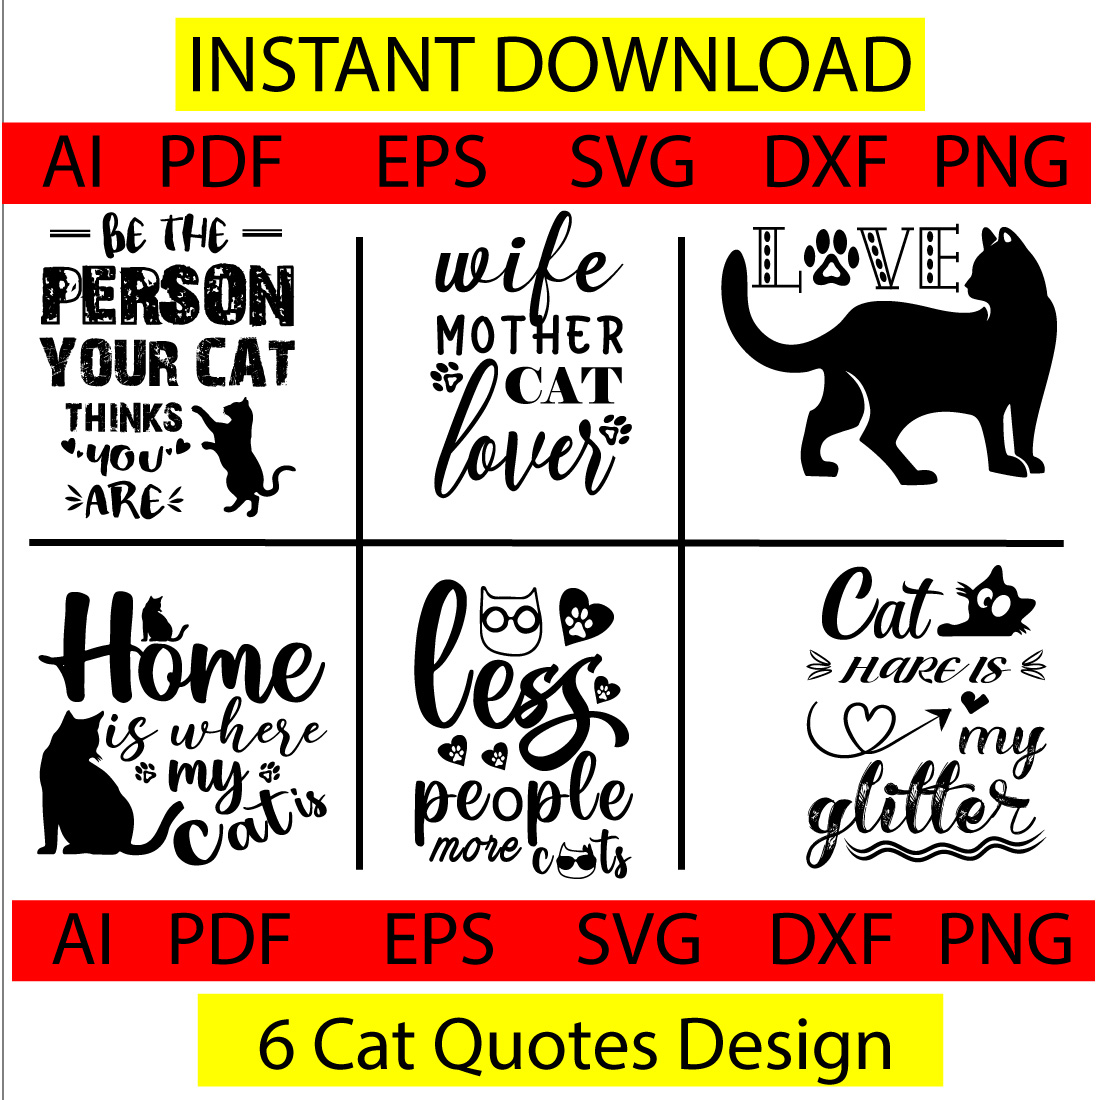 6 CAT TSHIRT DESIGN SVG BUNDIL cover image.